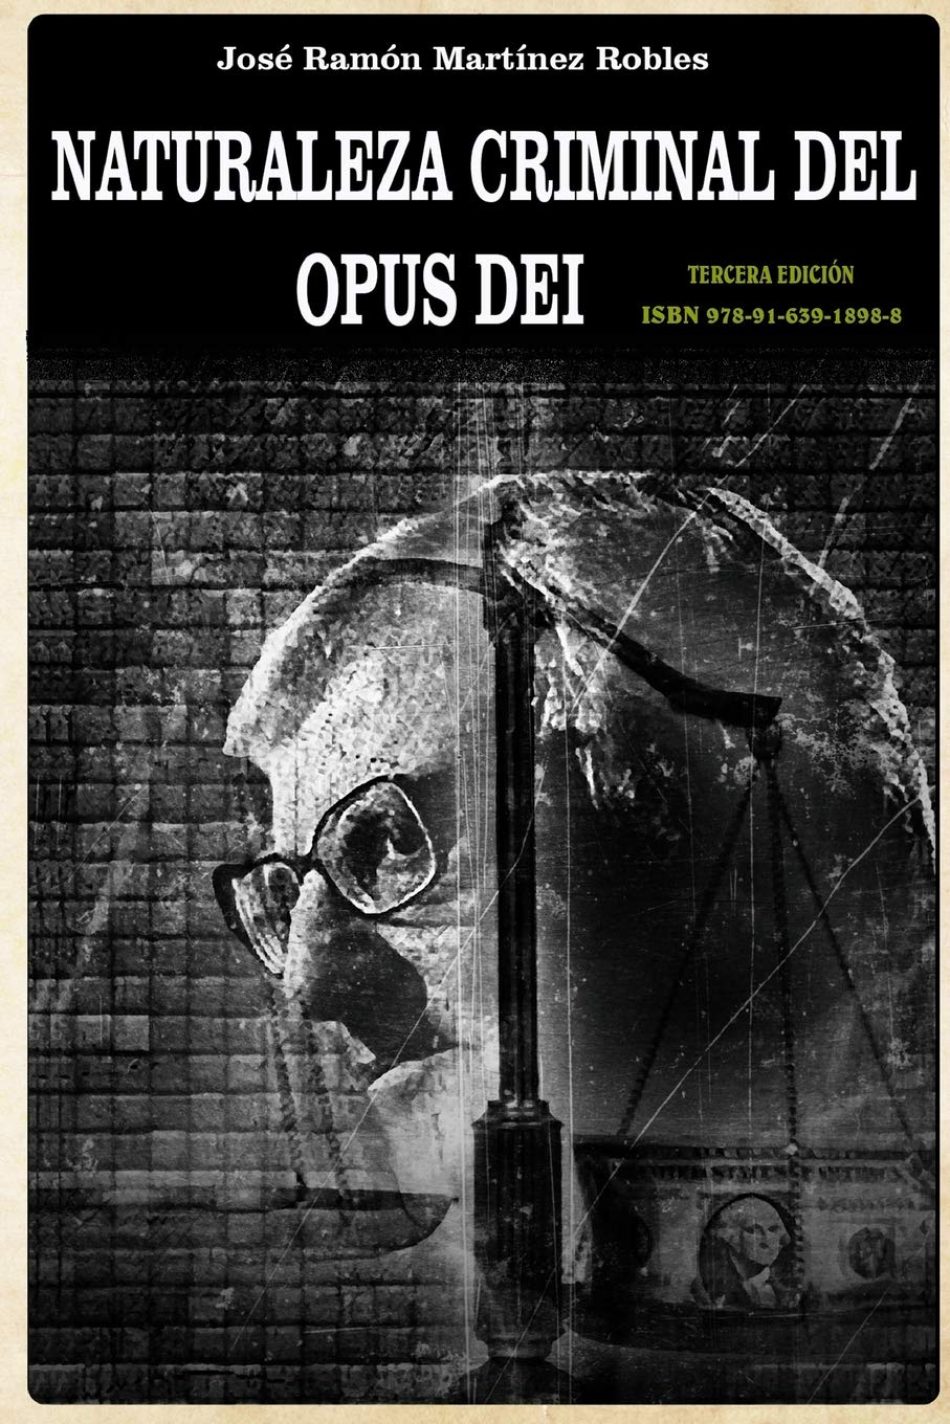 El libro «Naturaleza criminal del Opus Dei», disponible gratuitamente en Internet 